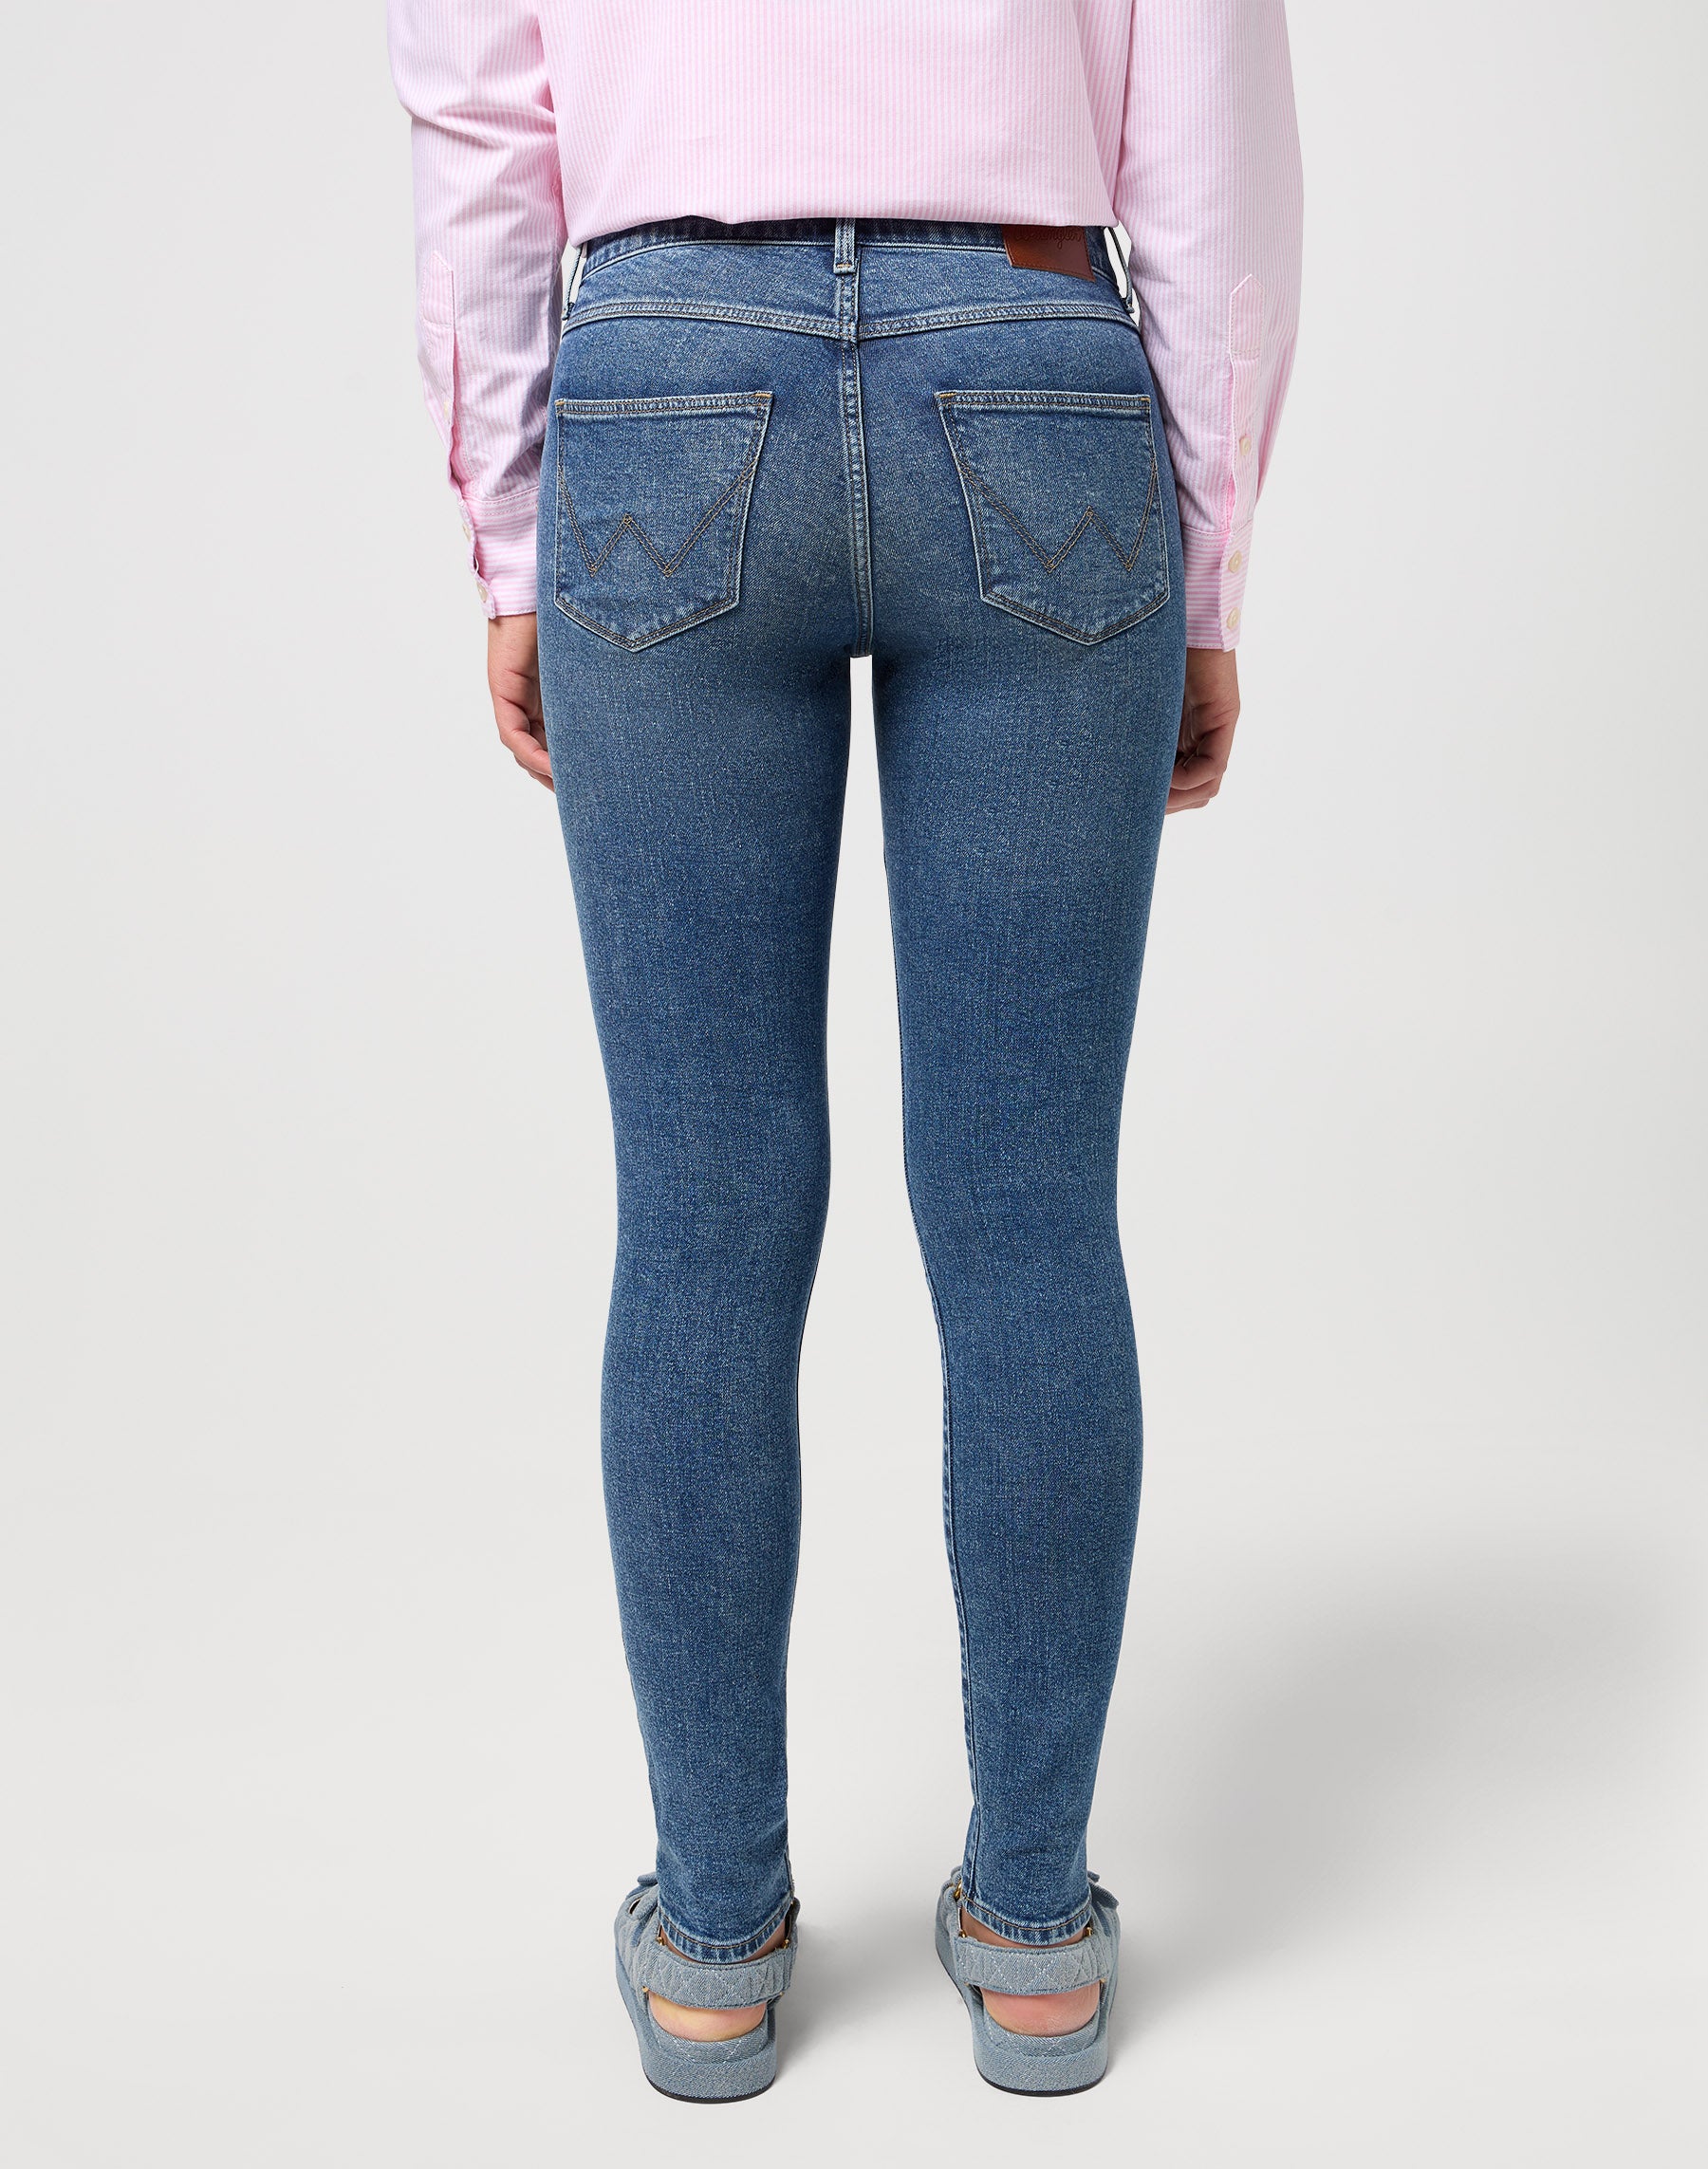 High Skinny in Lovers Jeans Wrangler   